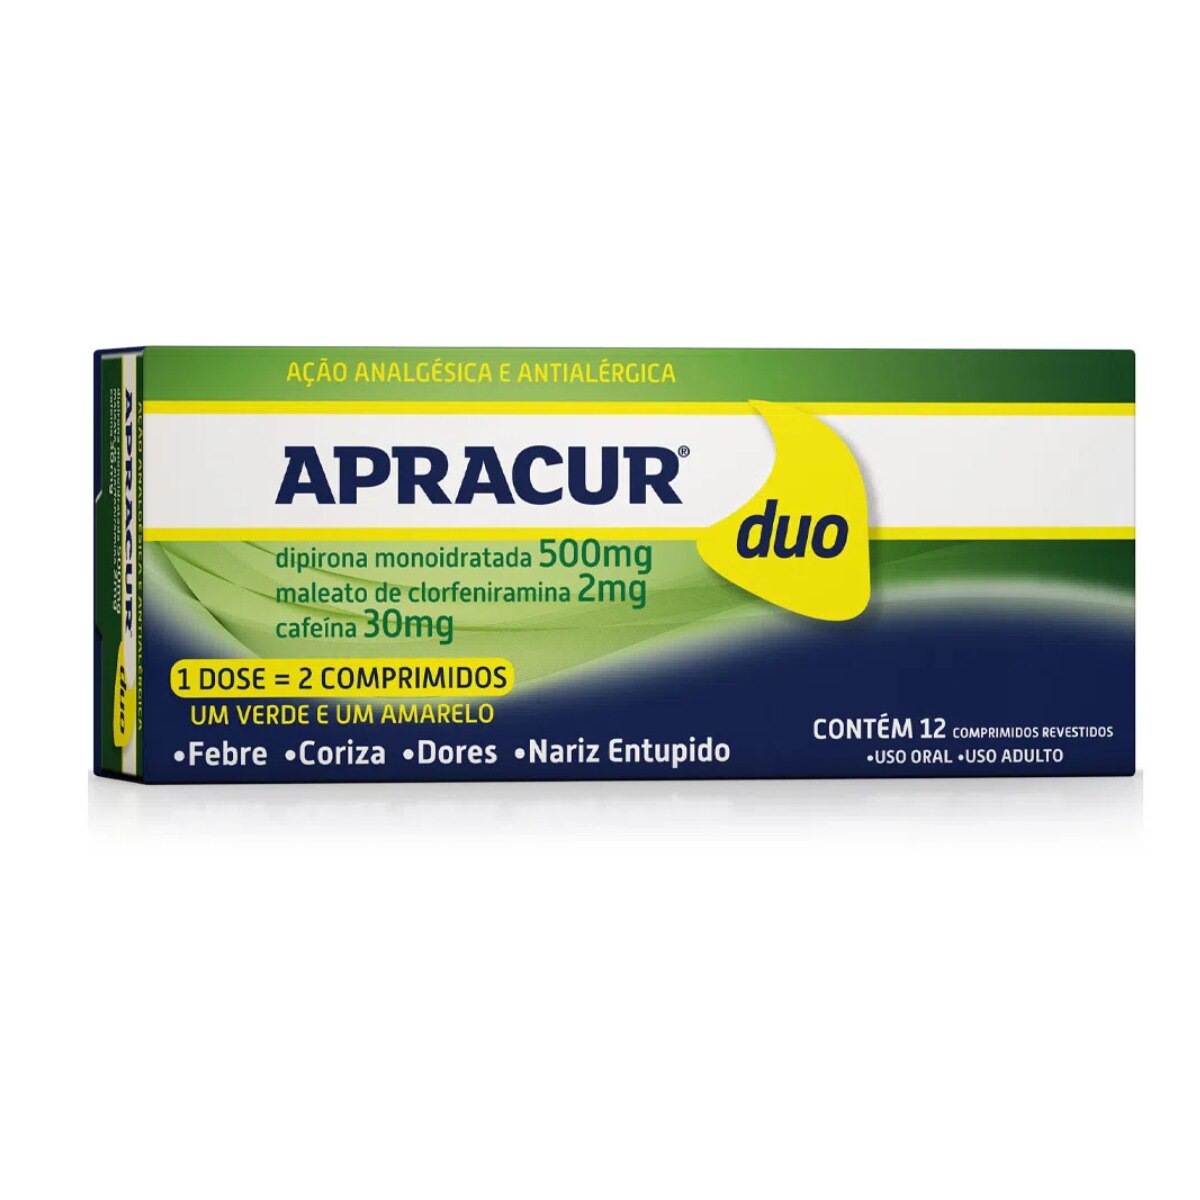 Apracur Duo 12 Comprimidos Revestidos